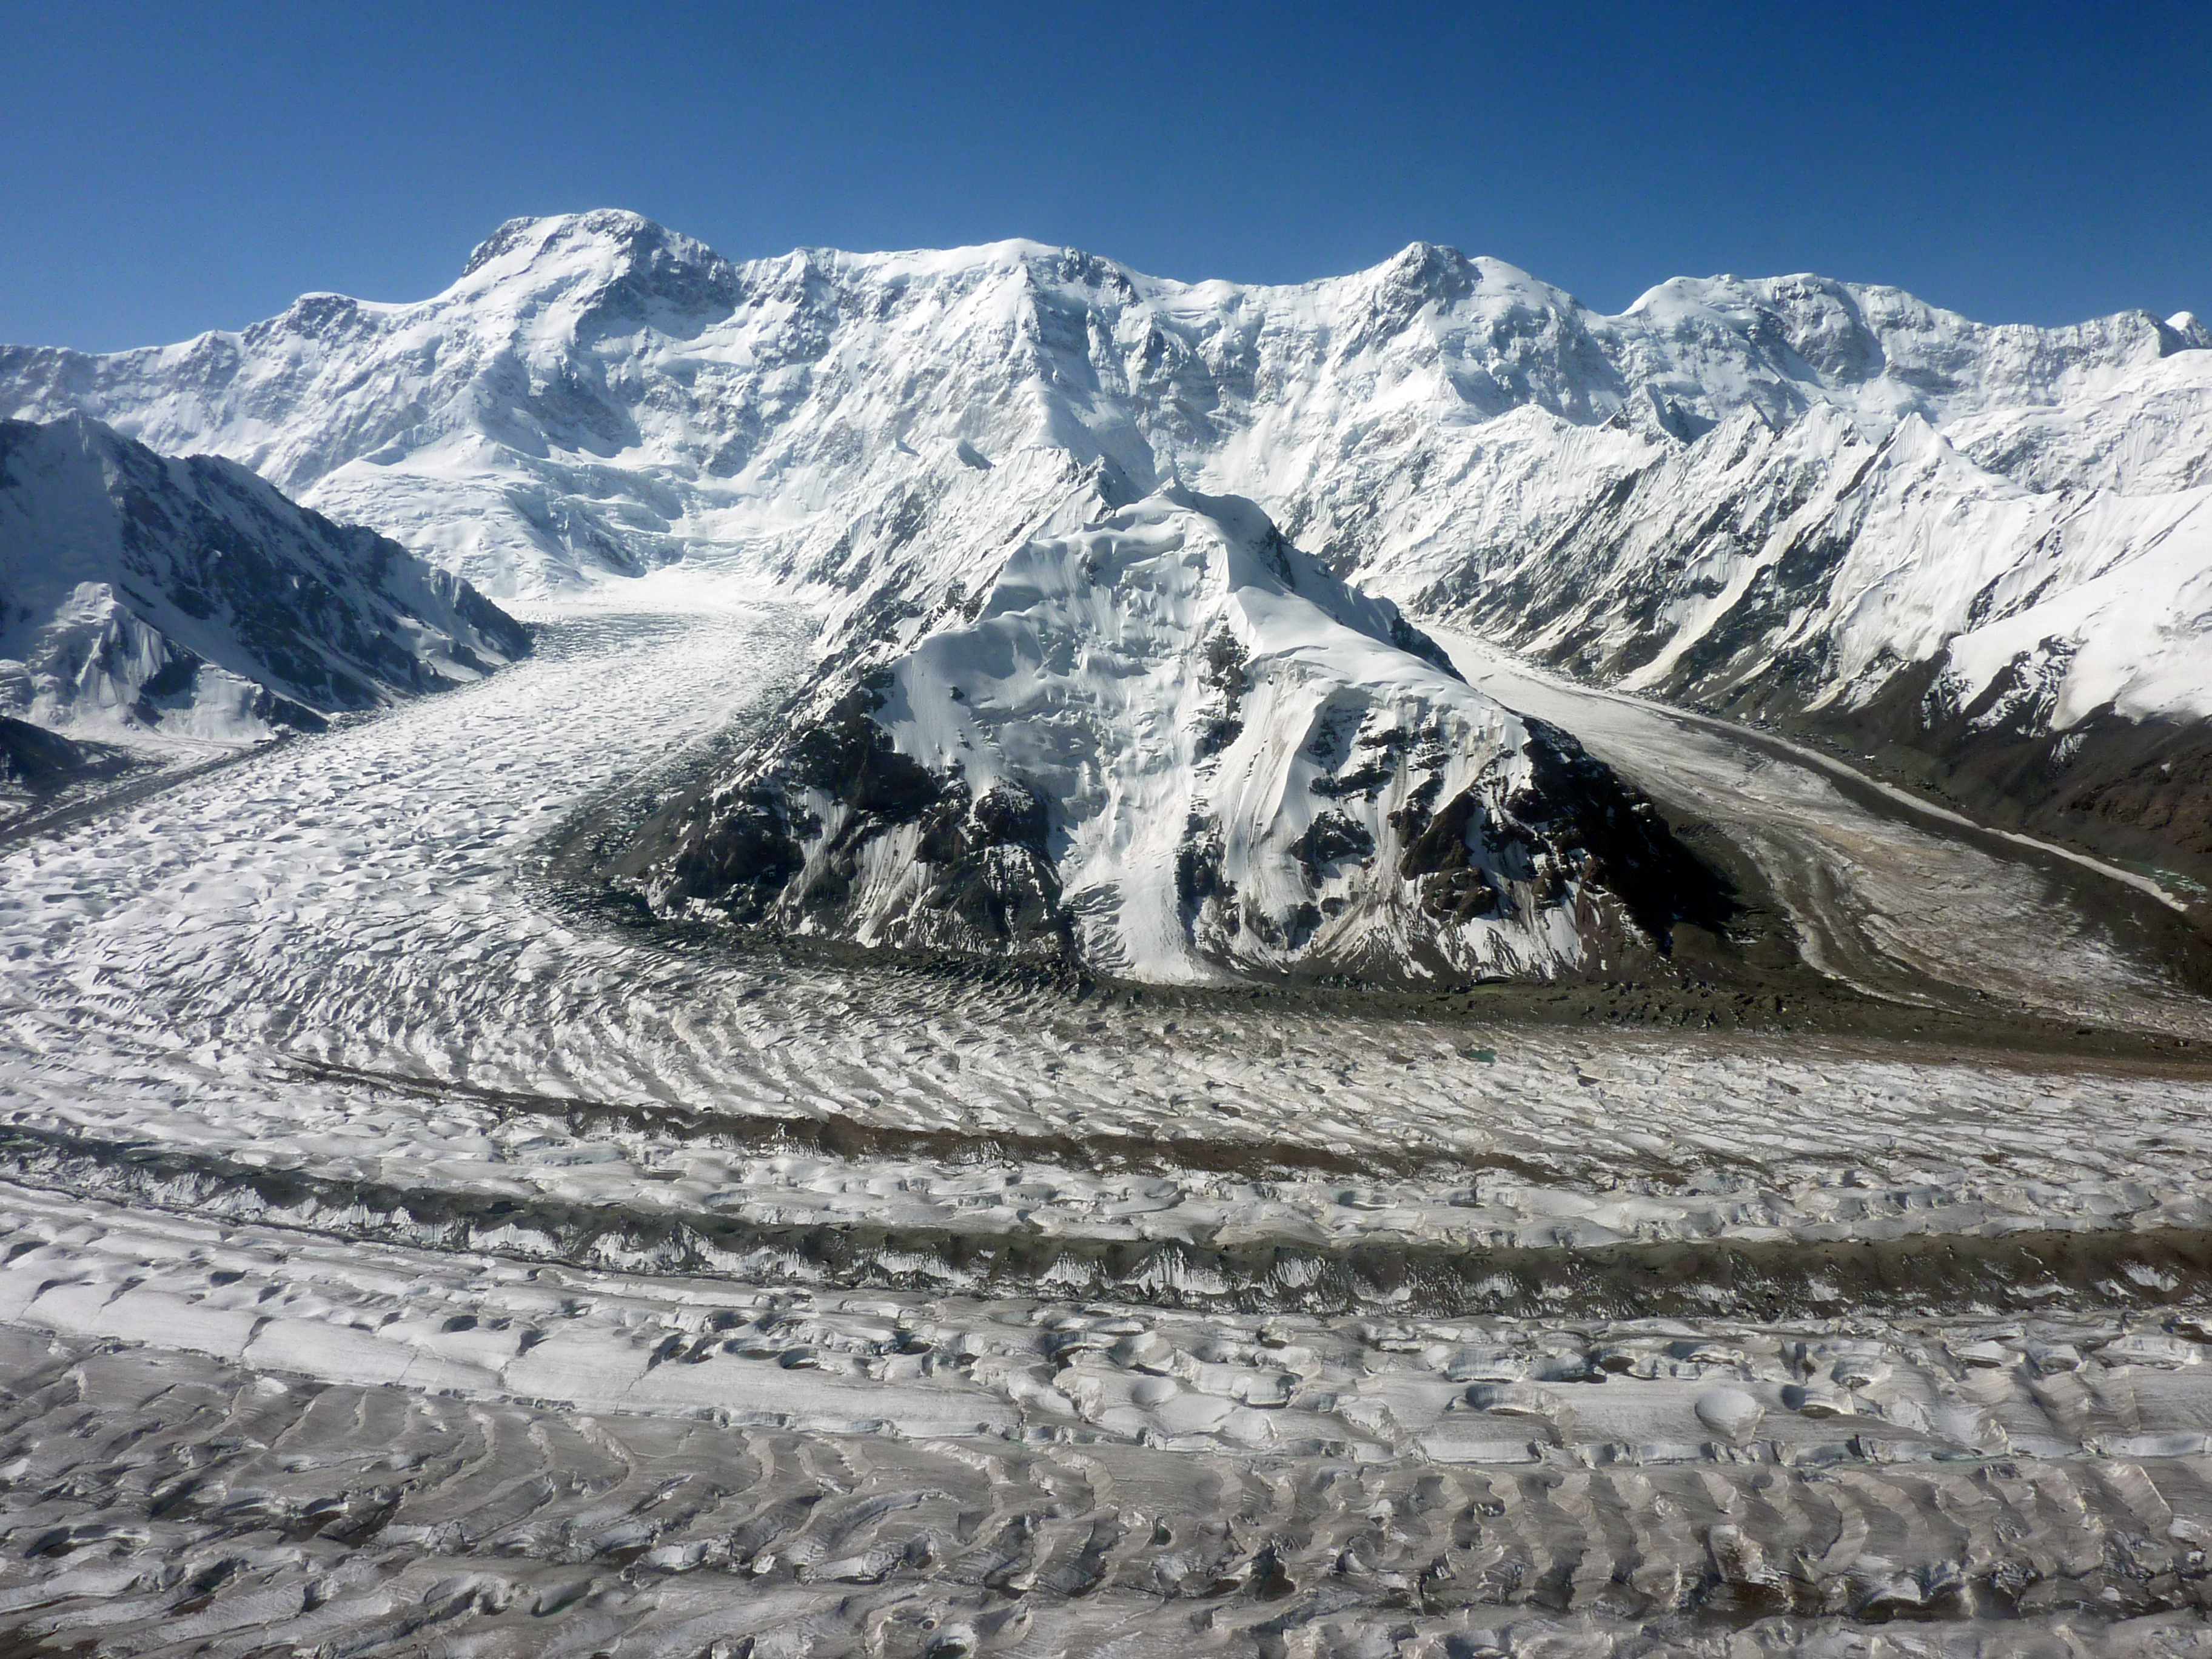  Высшая точка Тянь-Шаня — пик Победы находится в истоках ледника Звездочка (левый приток ледника Южный Иныльчек), расположенного в хребте Кокшалтау